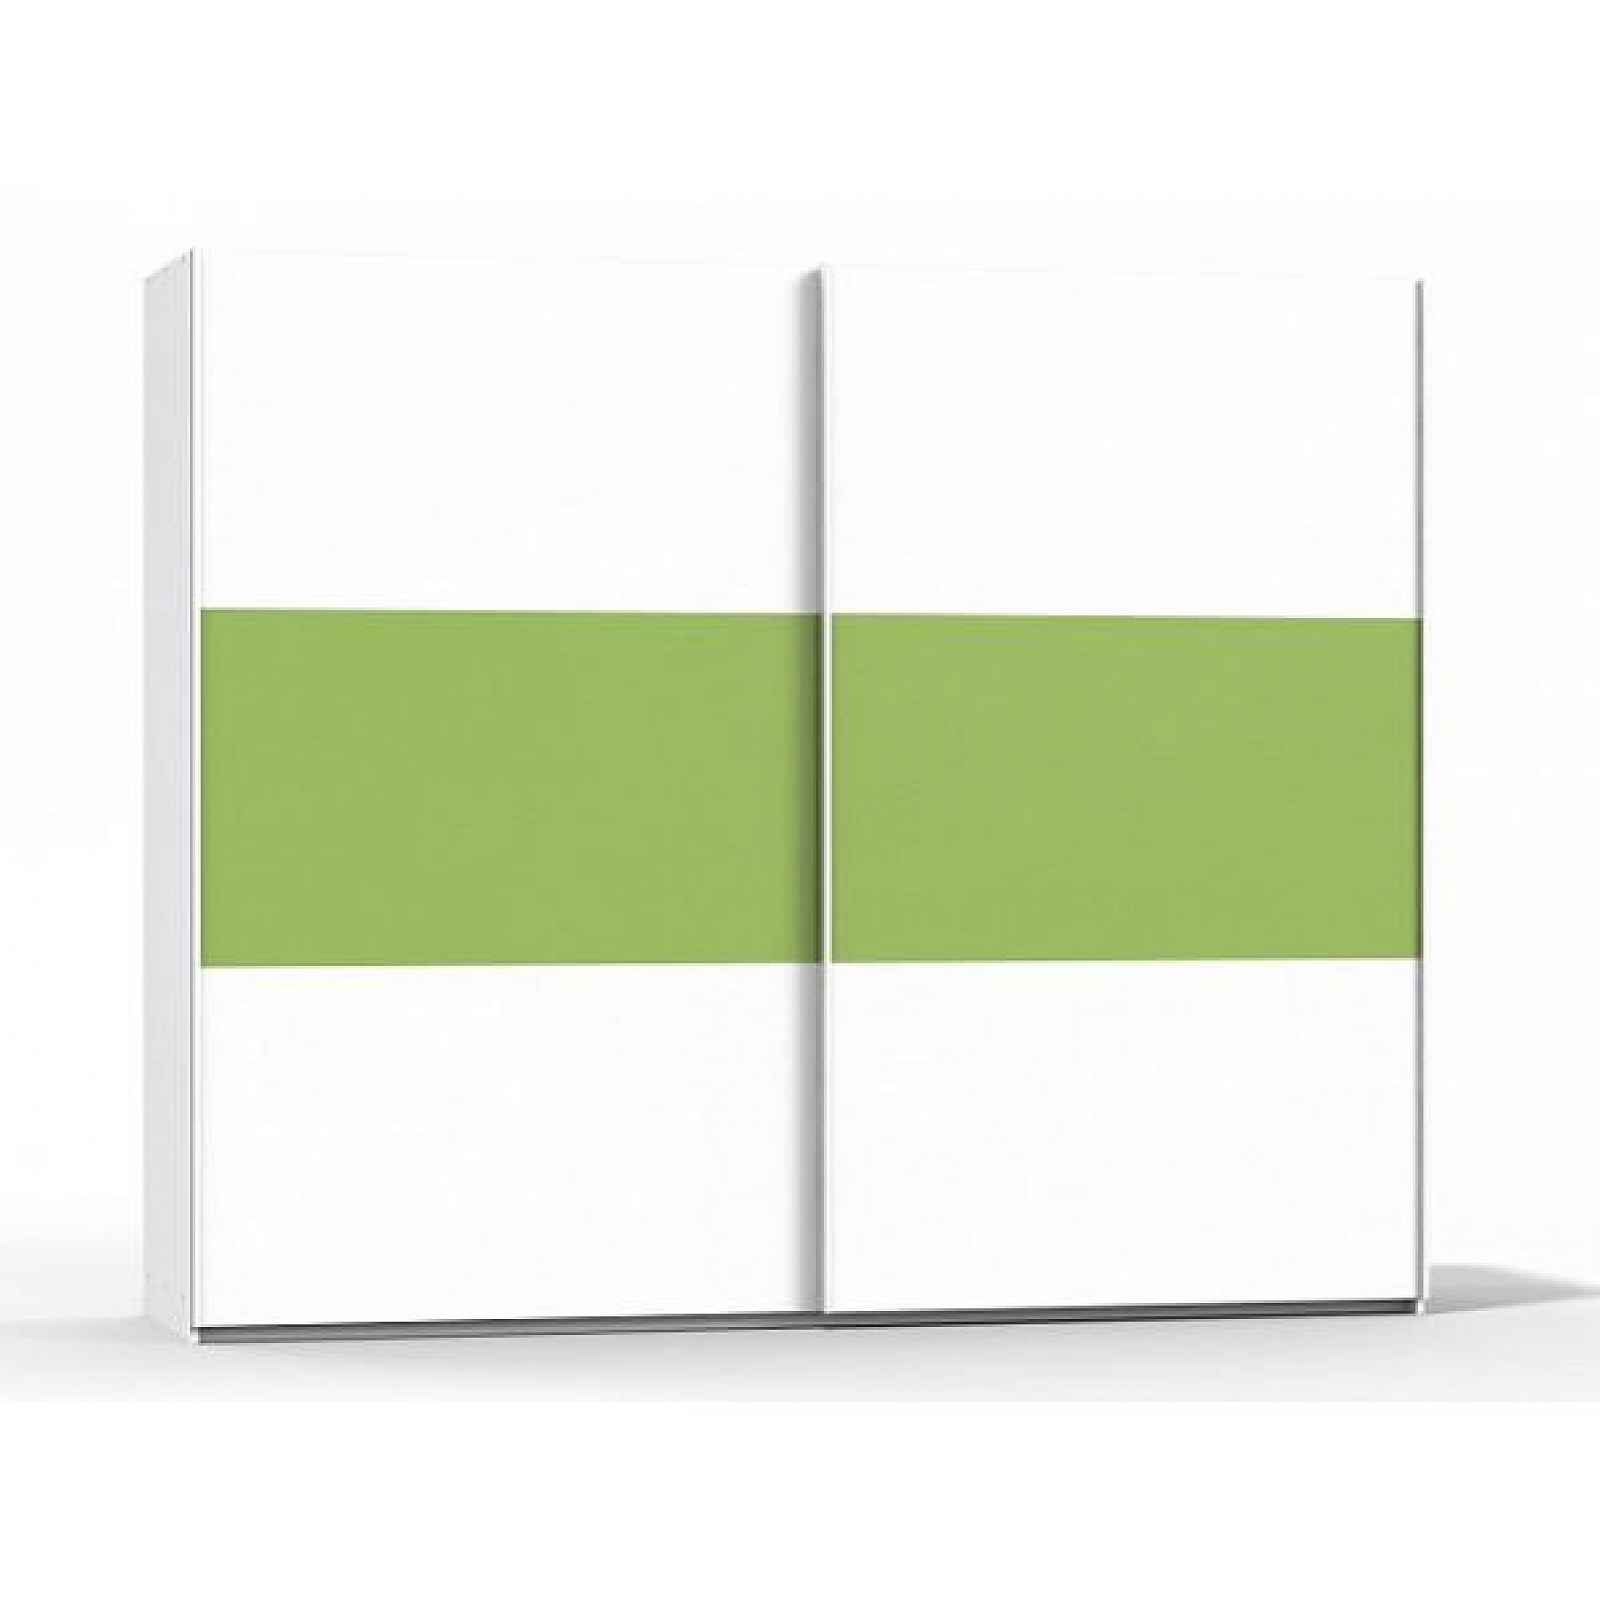 Šatní skříň Rea Houston 6 bílá-zelená